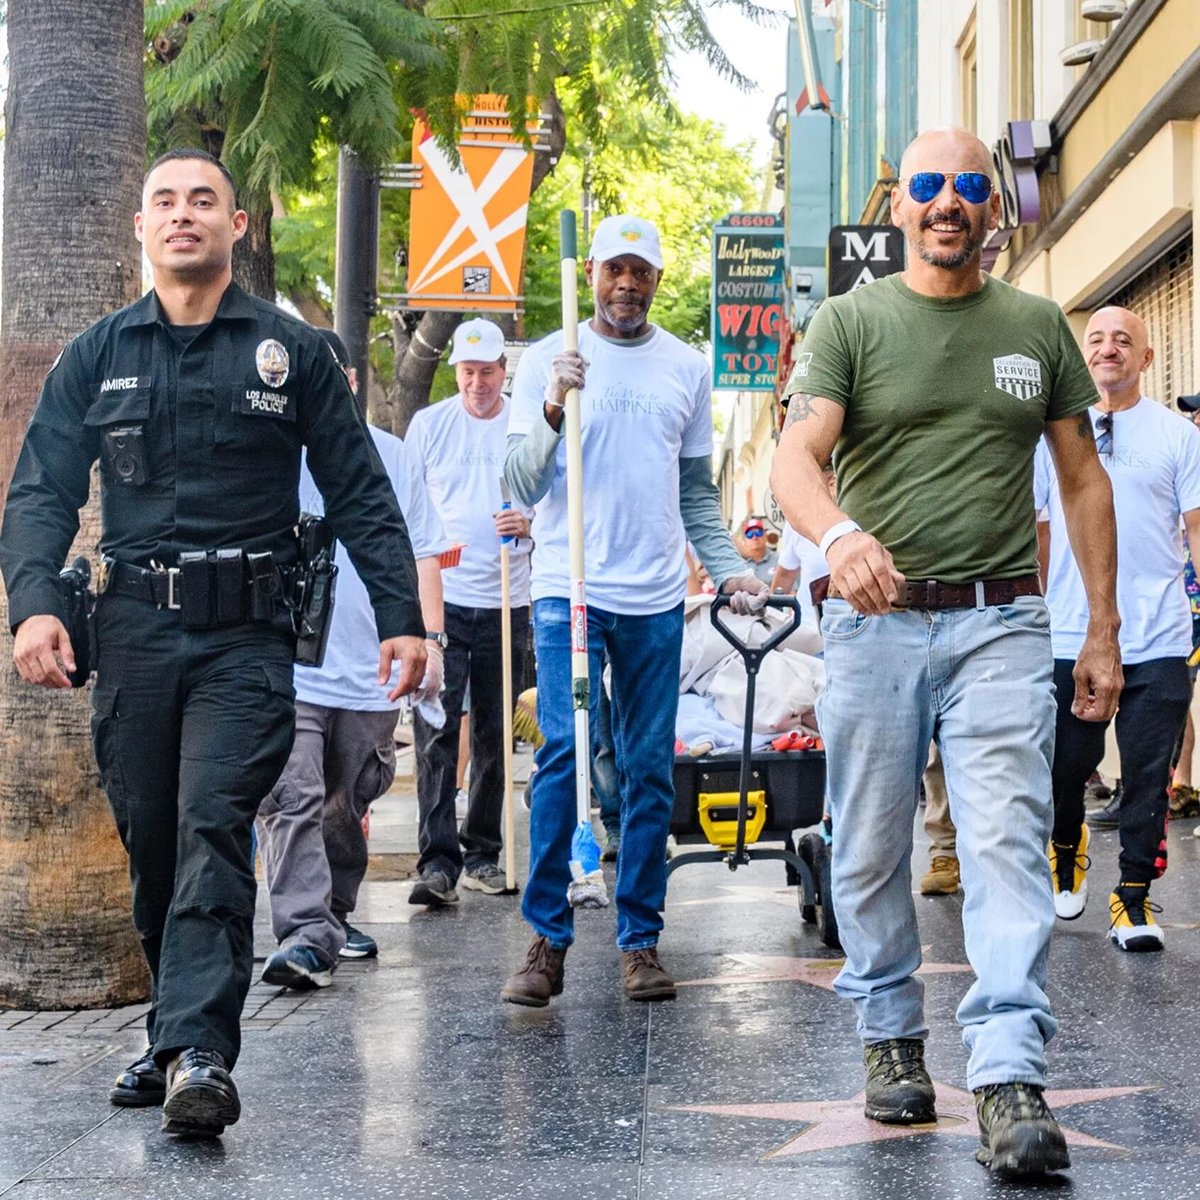 Důstojník Policejního sboru Los Angeles a dobrovolníci pochodovali s vybavením, aby zkrášlili výkladní skříně podél chodníku slávy Hollywood Boulevard